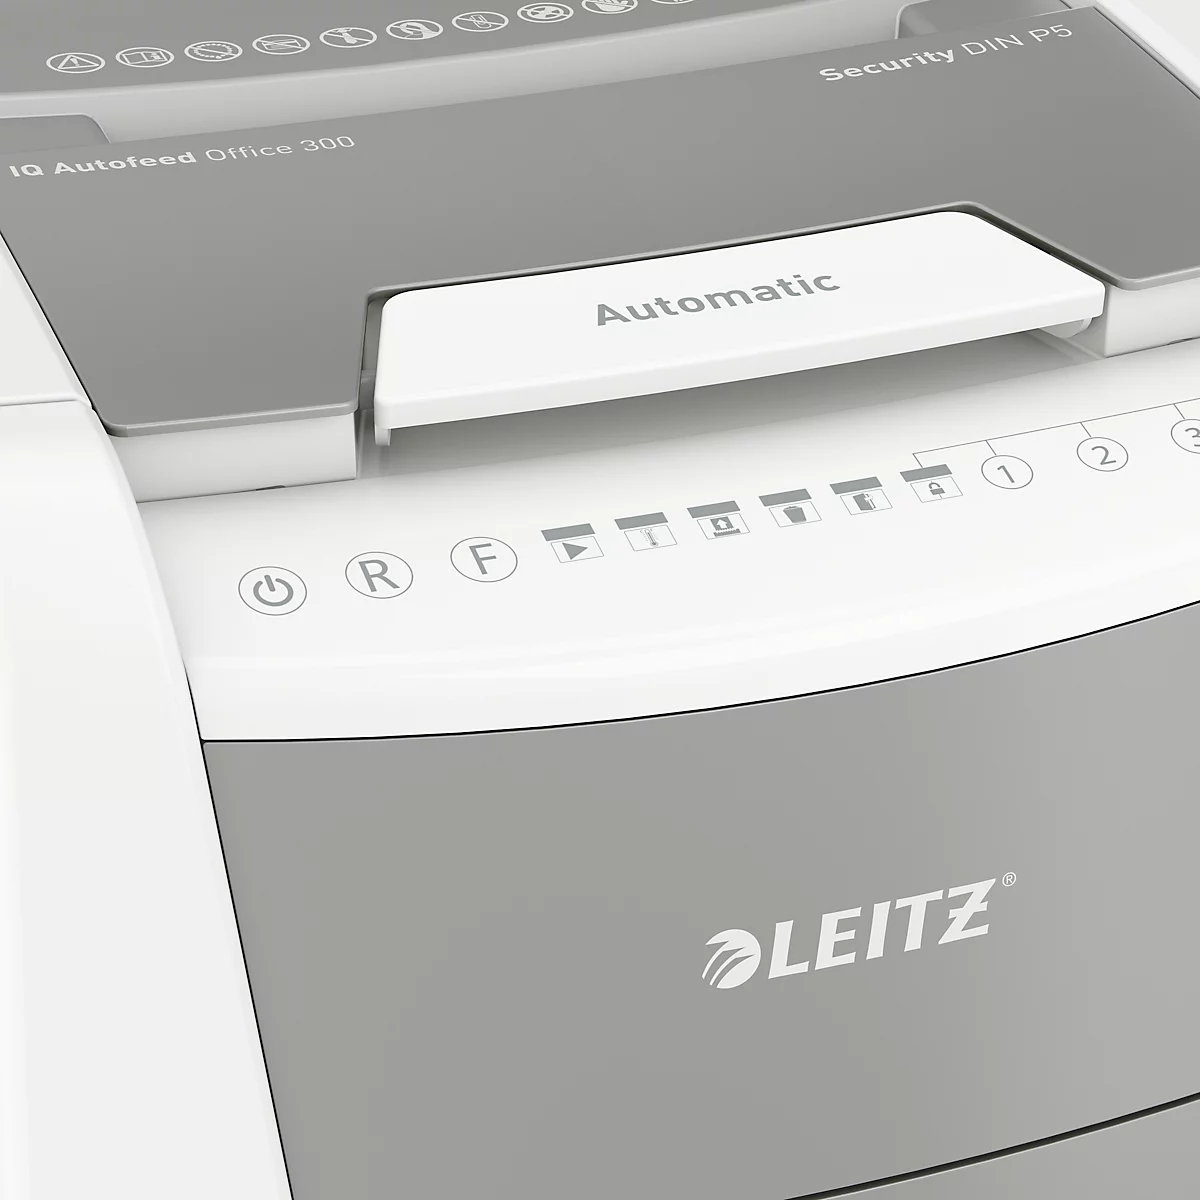 Leitz IQ Autofeed Office Pro 600 Aktenvernichter P4, Vollautomatik, Partikelschnitt 4 x 36 mm, 110 l, 600 Blatt Schnittleistung, mit Rollen, weiß